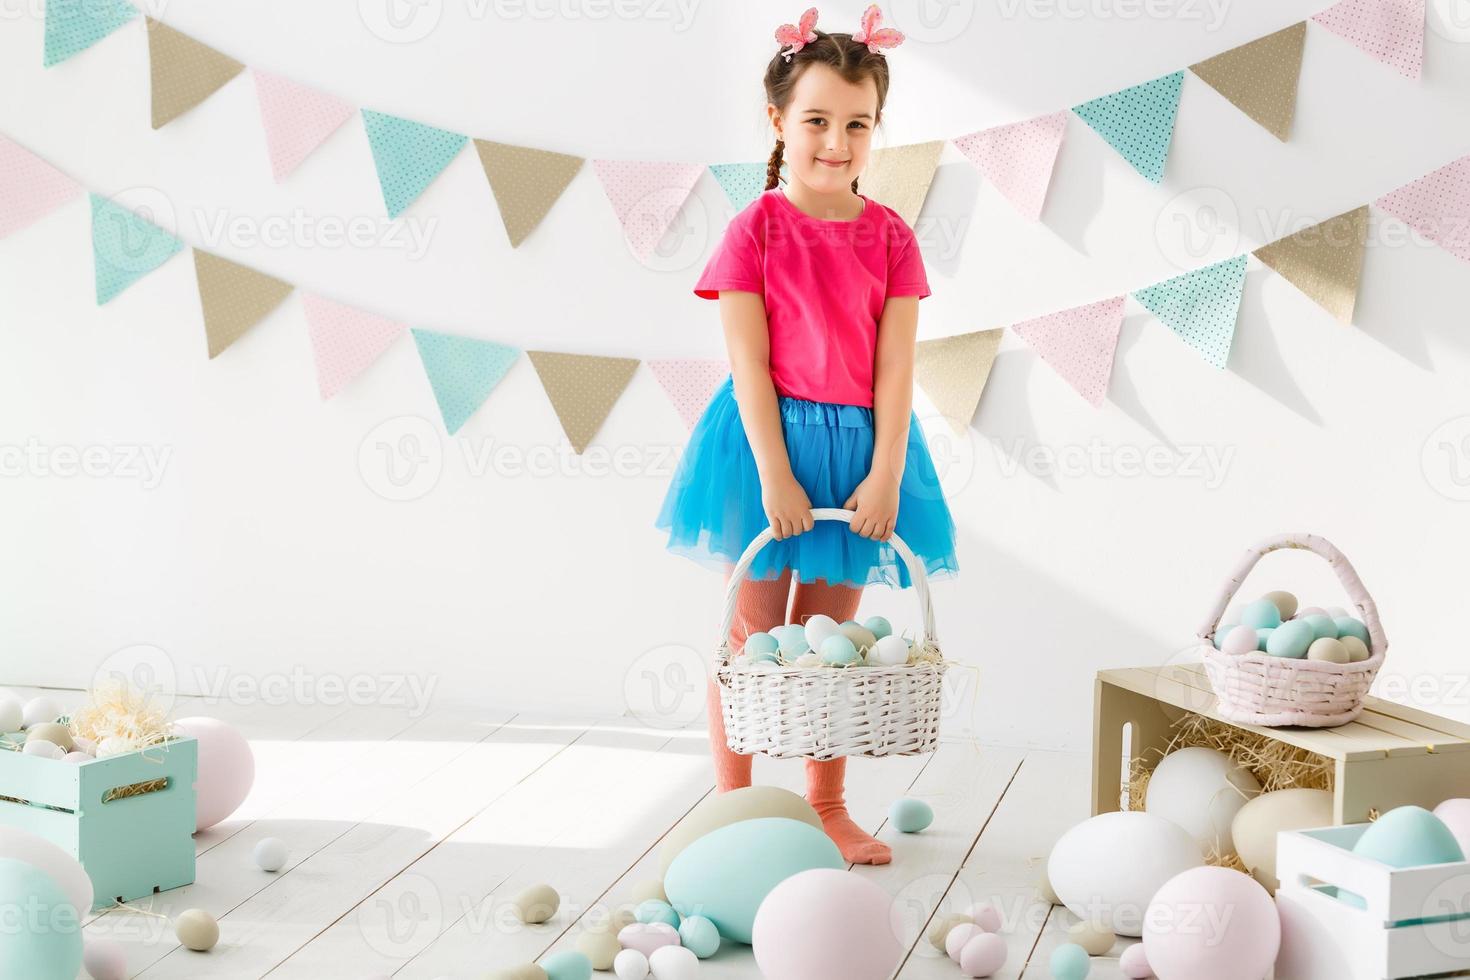 Vorbereitung auf Ostern. Schönes kleines Mädchen, das ein Osterei hält und mit Dekoration im Hintergrund lächelt foto